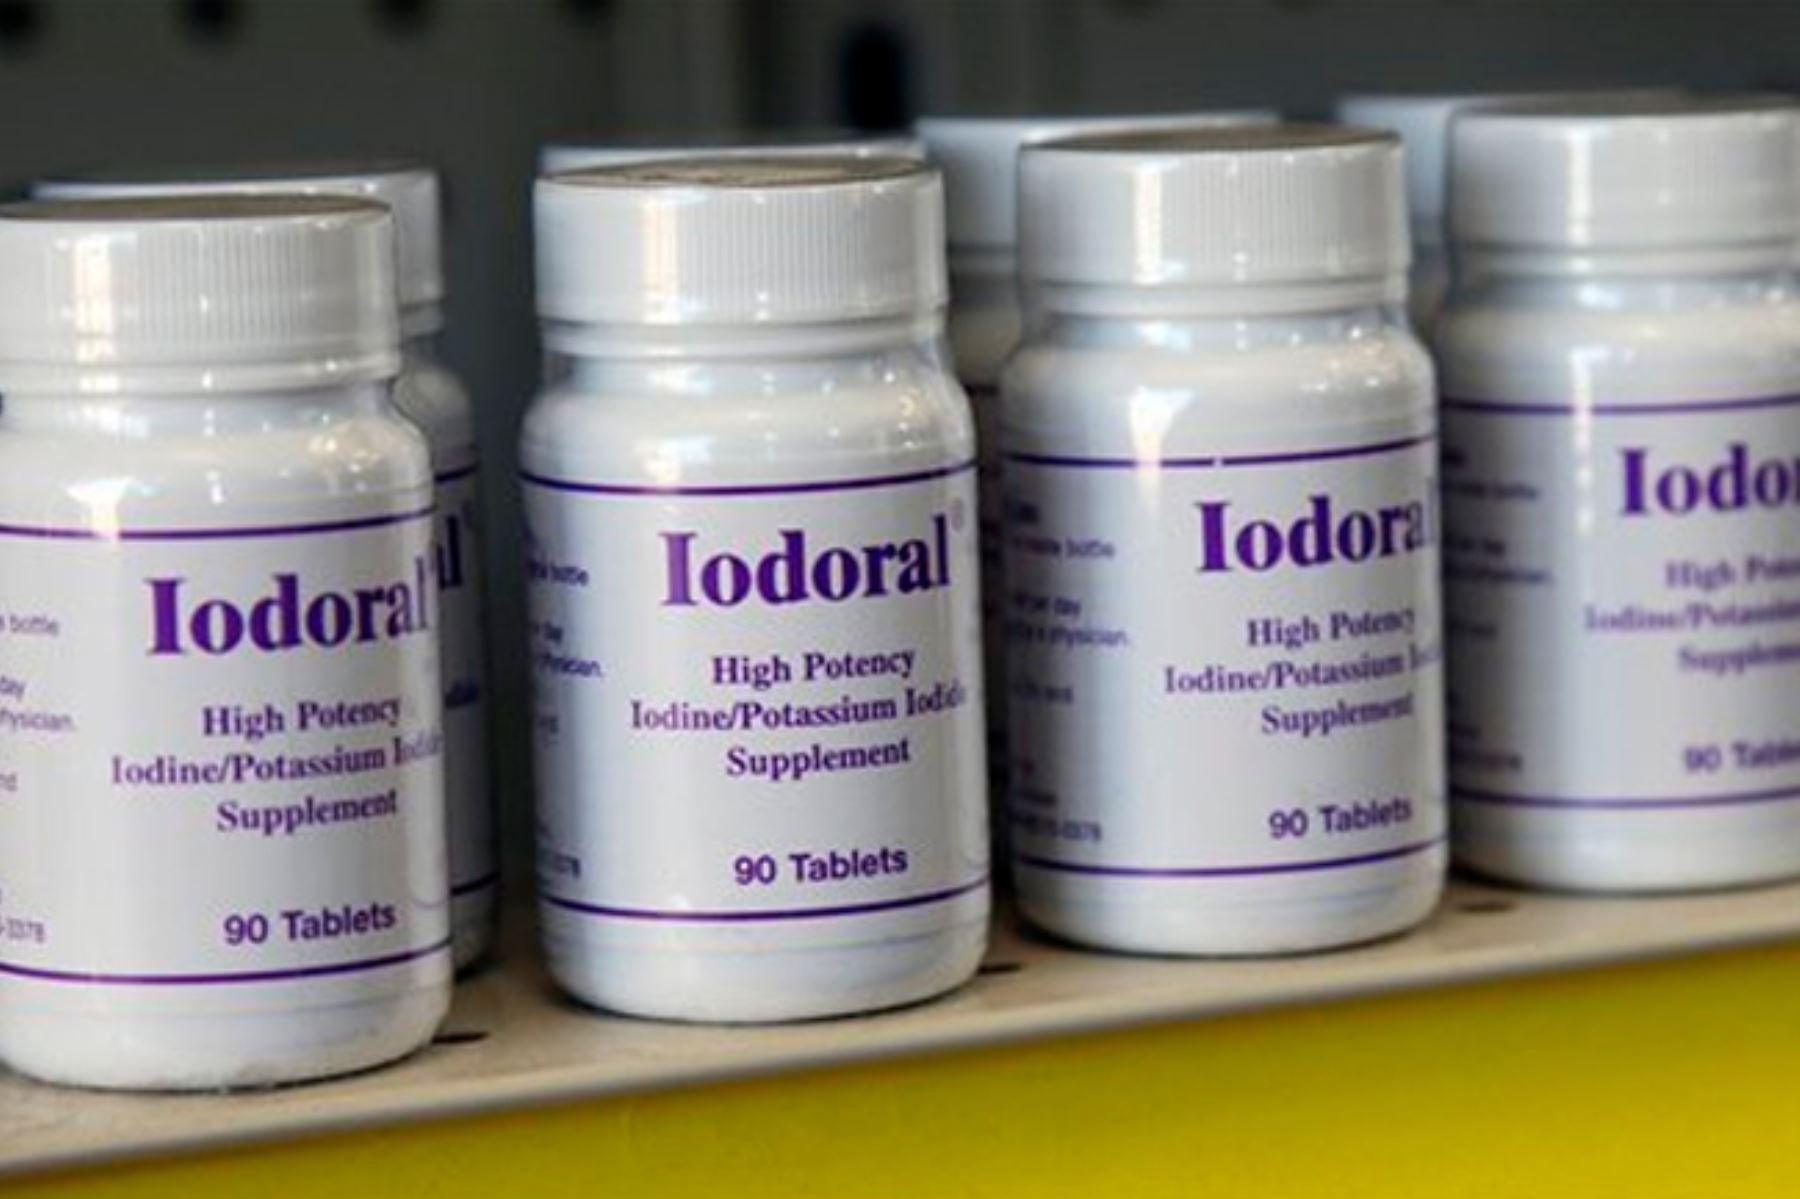 Bélgica distribuirá pastillas de yodo en todo el país para prevenir emergencia nuclear. Foto: INTERNET/Medios.